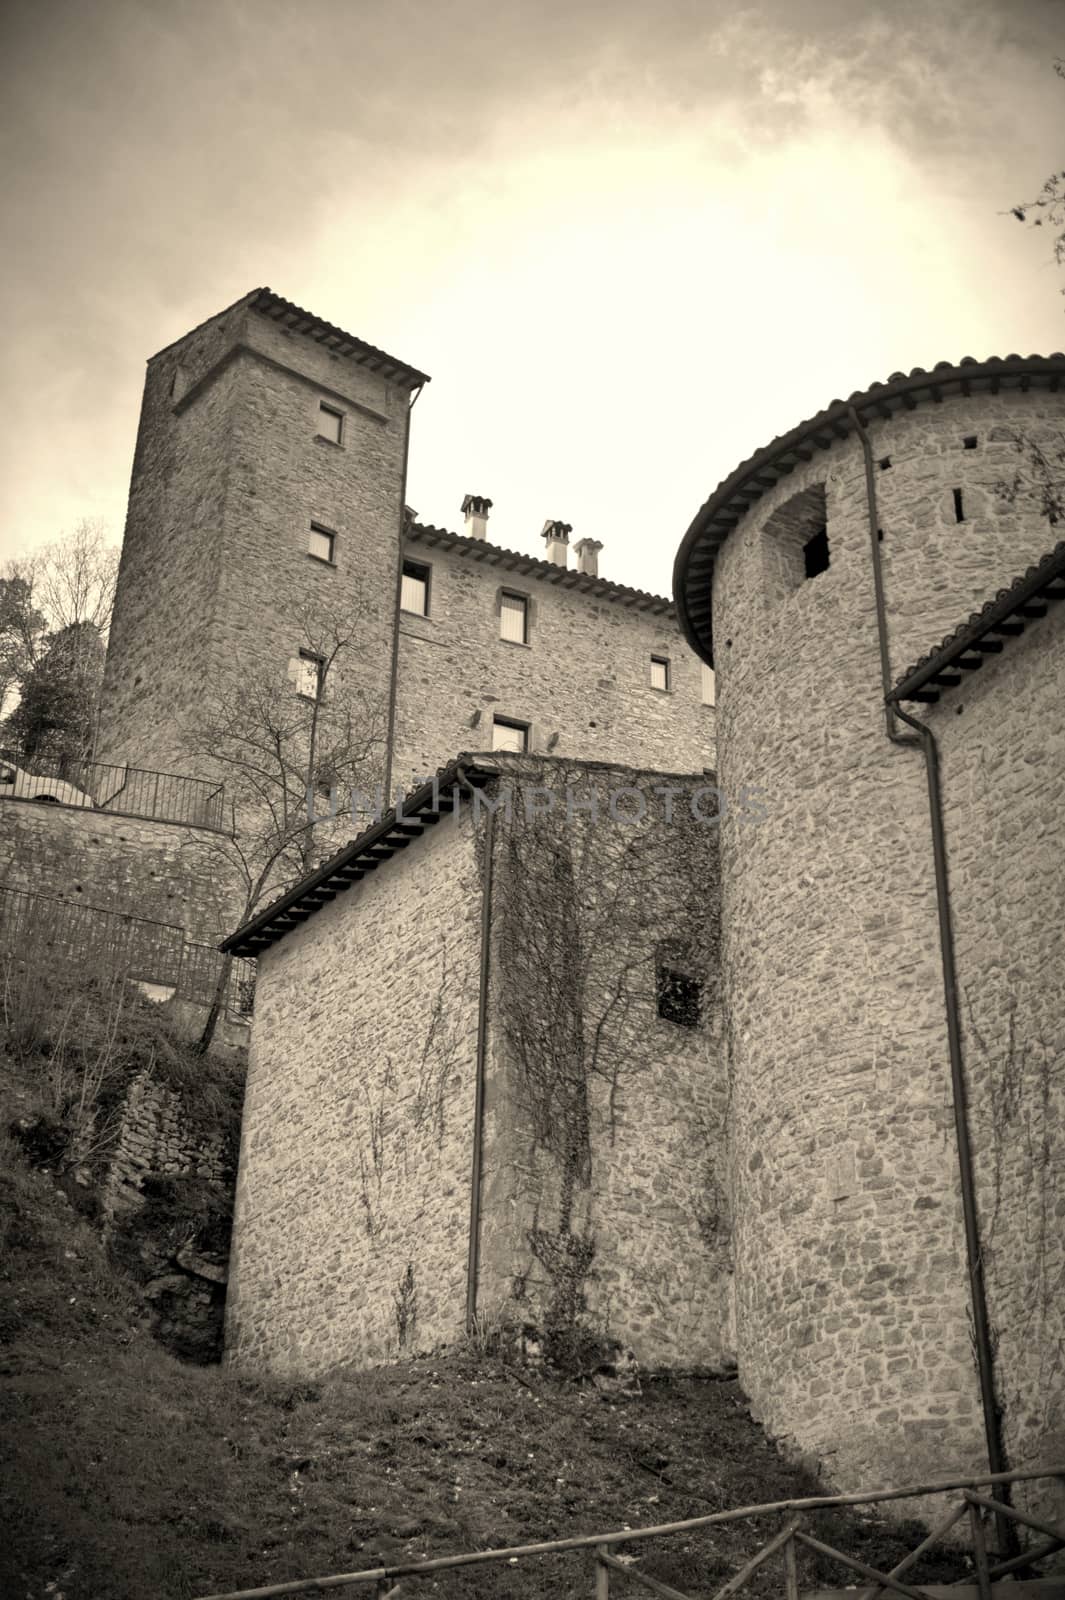 village of Scheggino province of Perugia Umbria